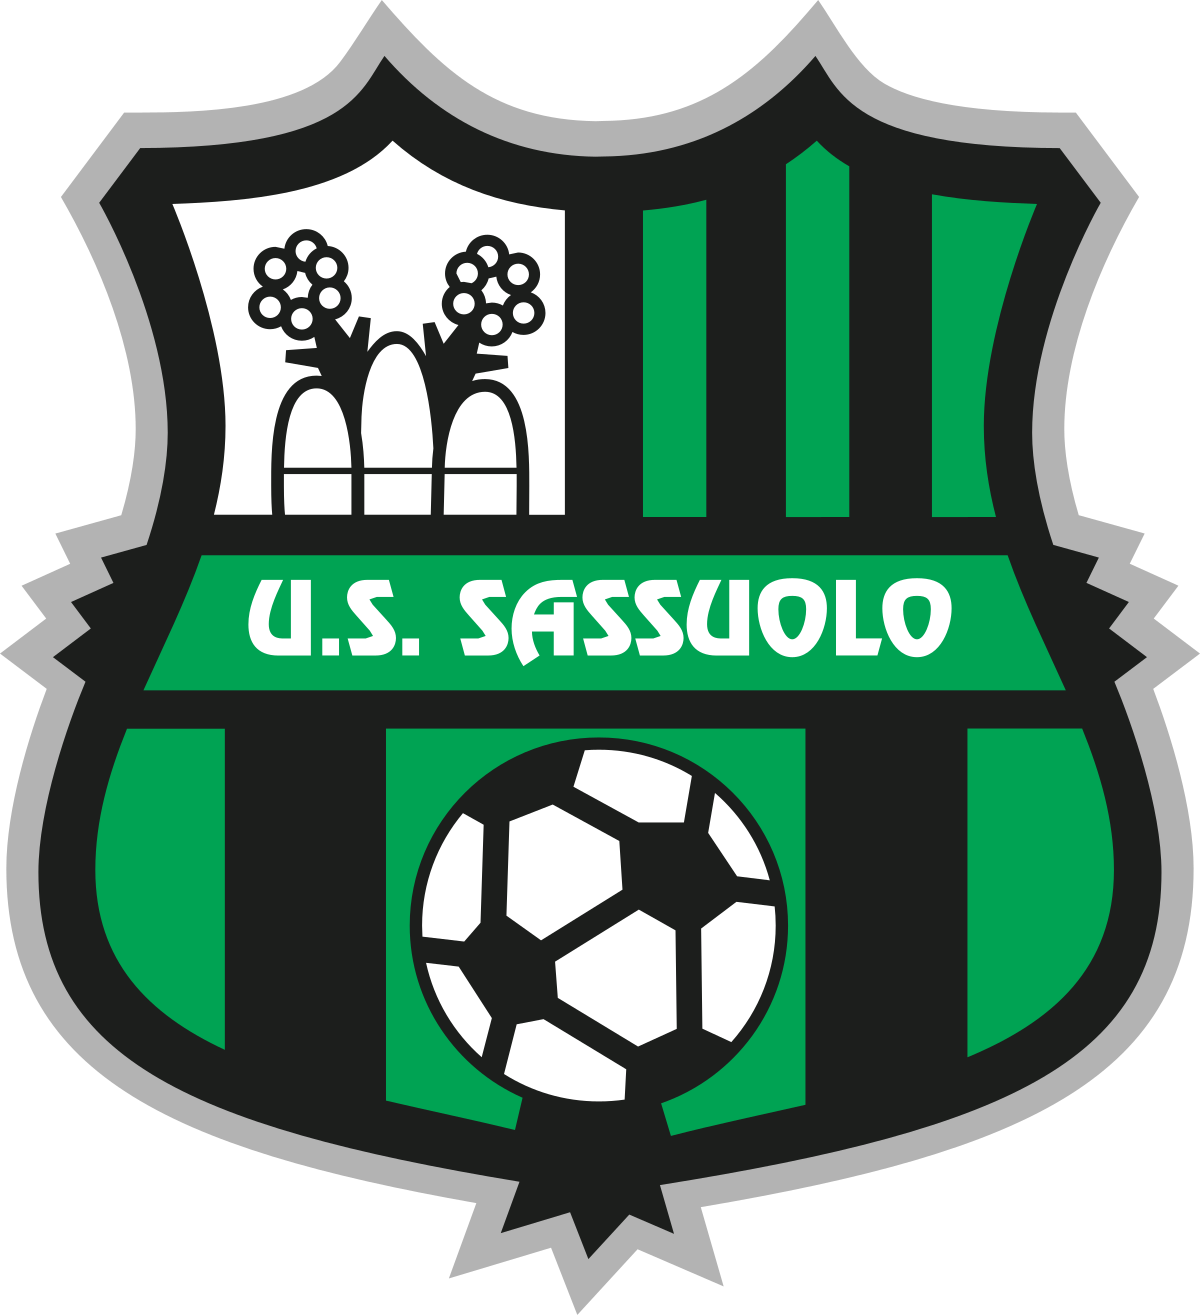 Unione Sportiva Sassuolo Calcio - Wikipedia